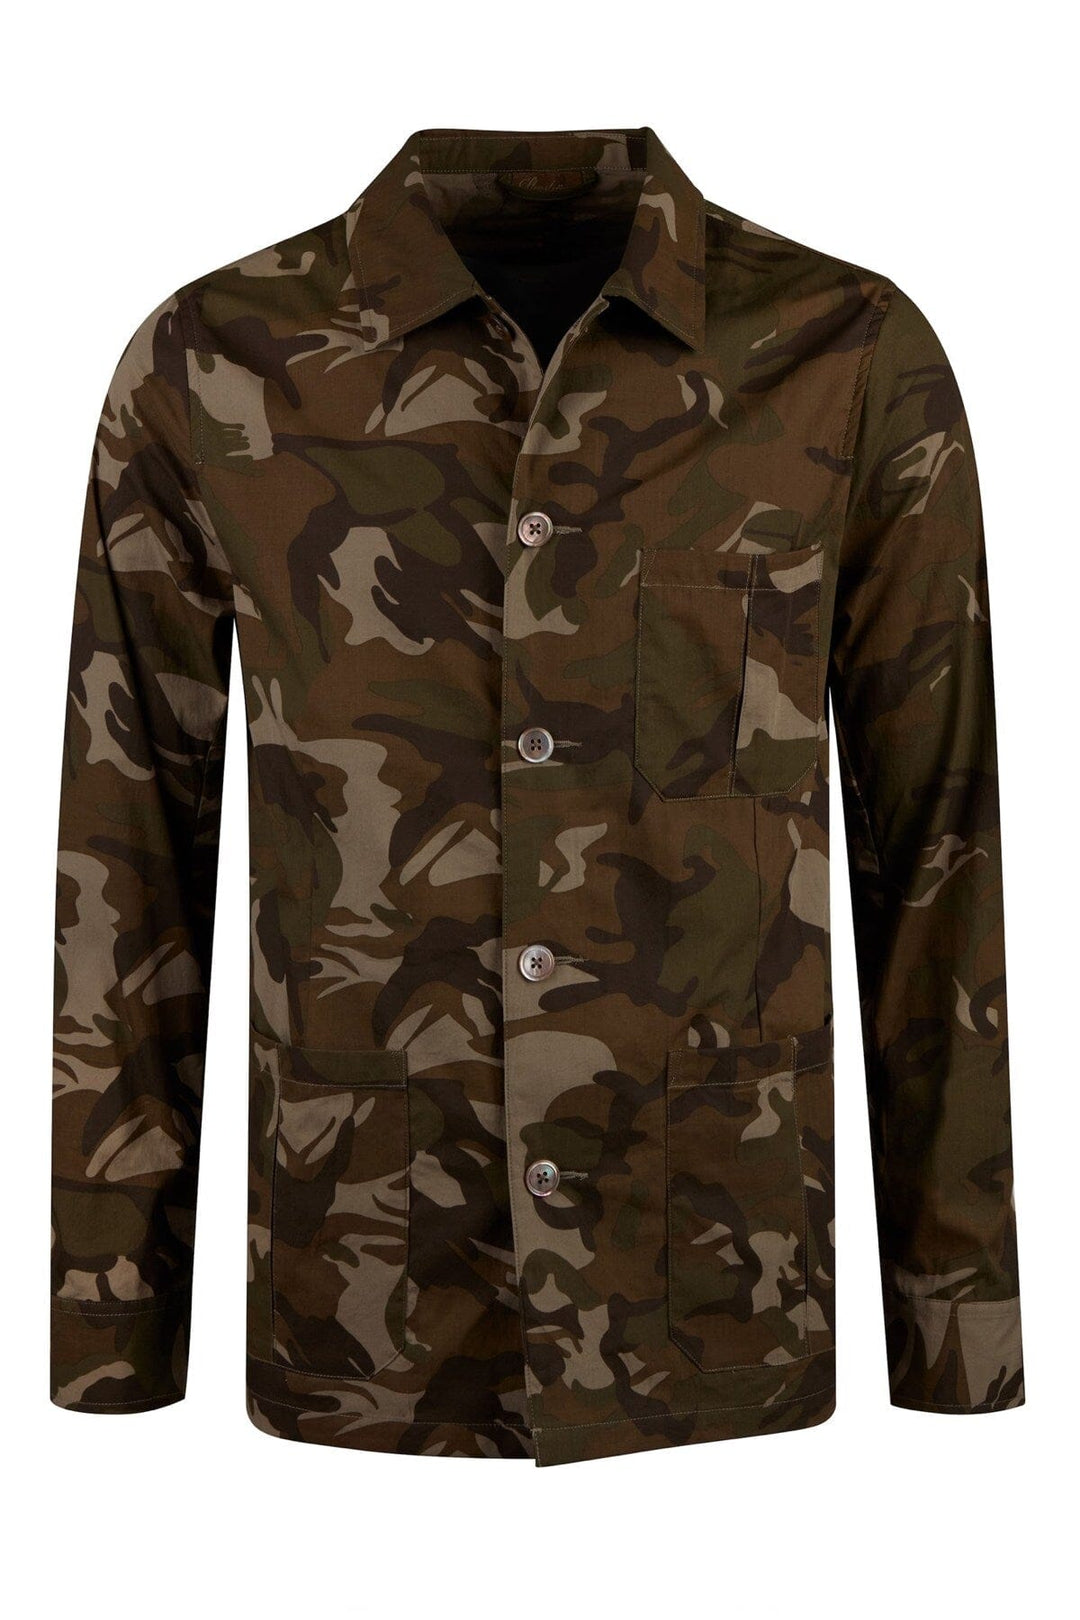 Veste utilitaire camouflage Homme - Manteaux et vestes - Veste avec manches Stenstroms